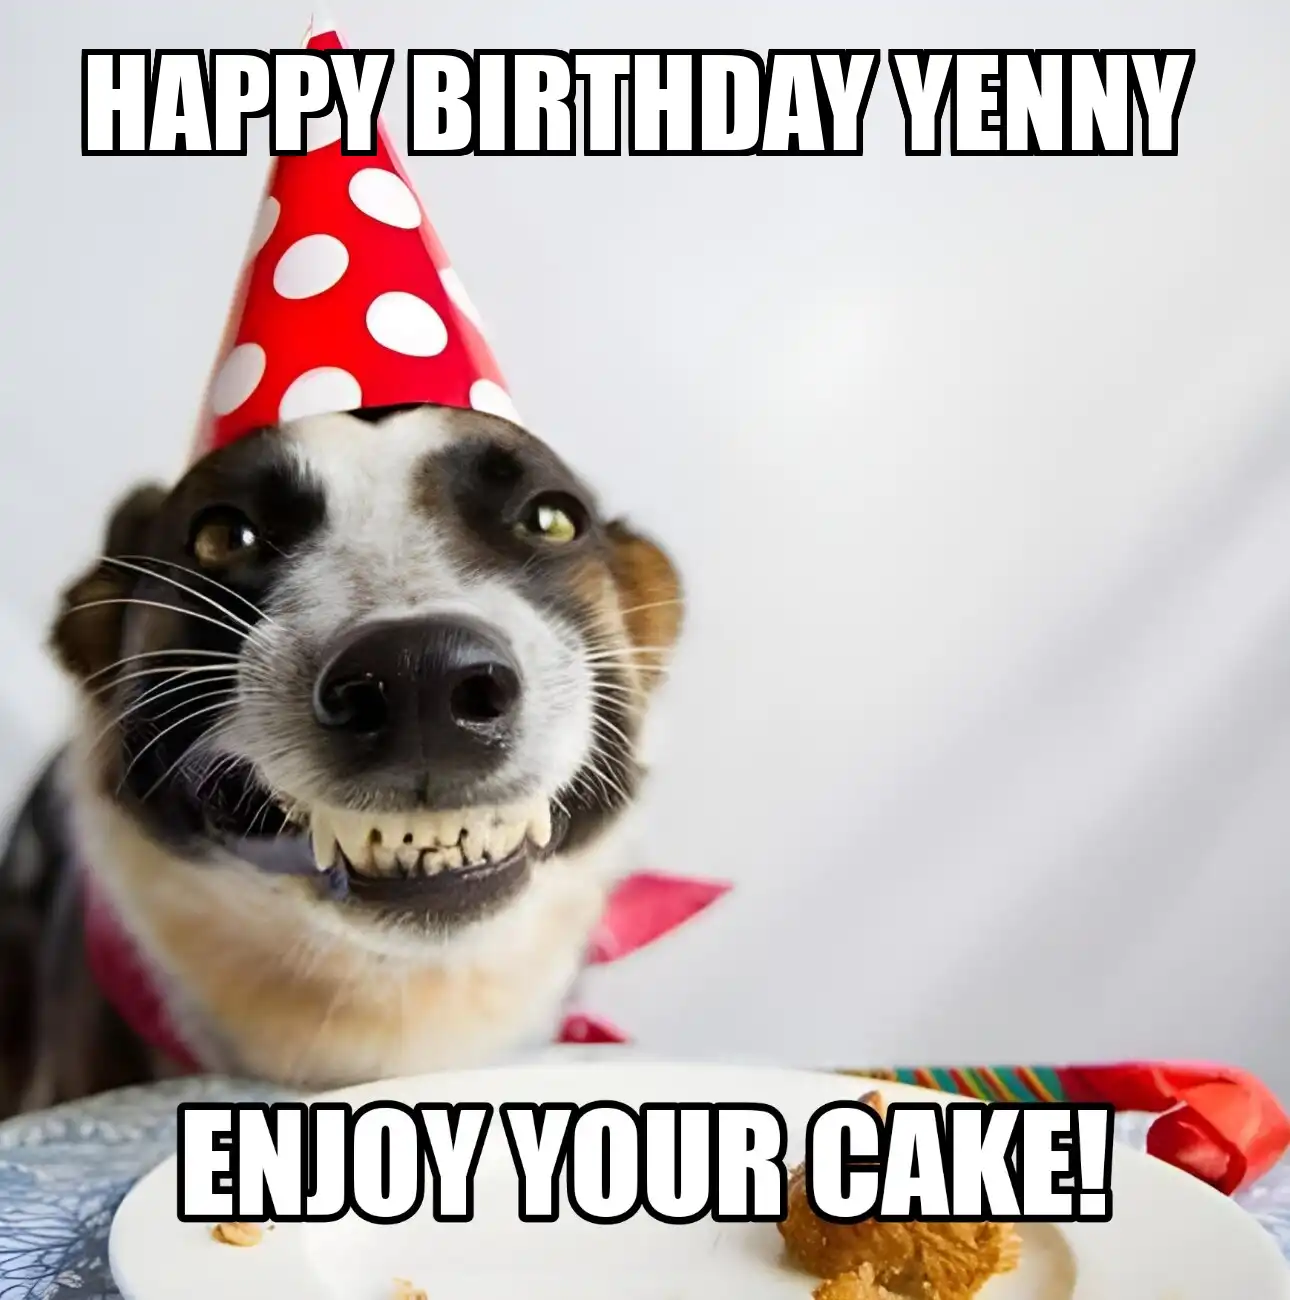 Happy Birthday Yenny Enjoy Your Cake Dog Meme